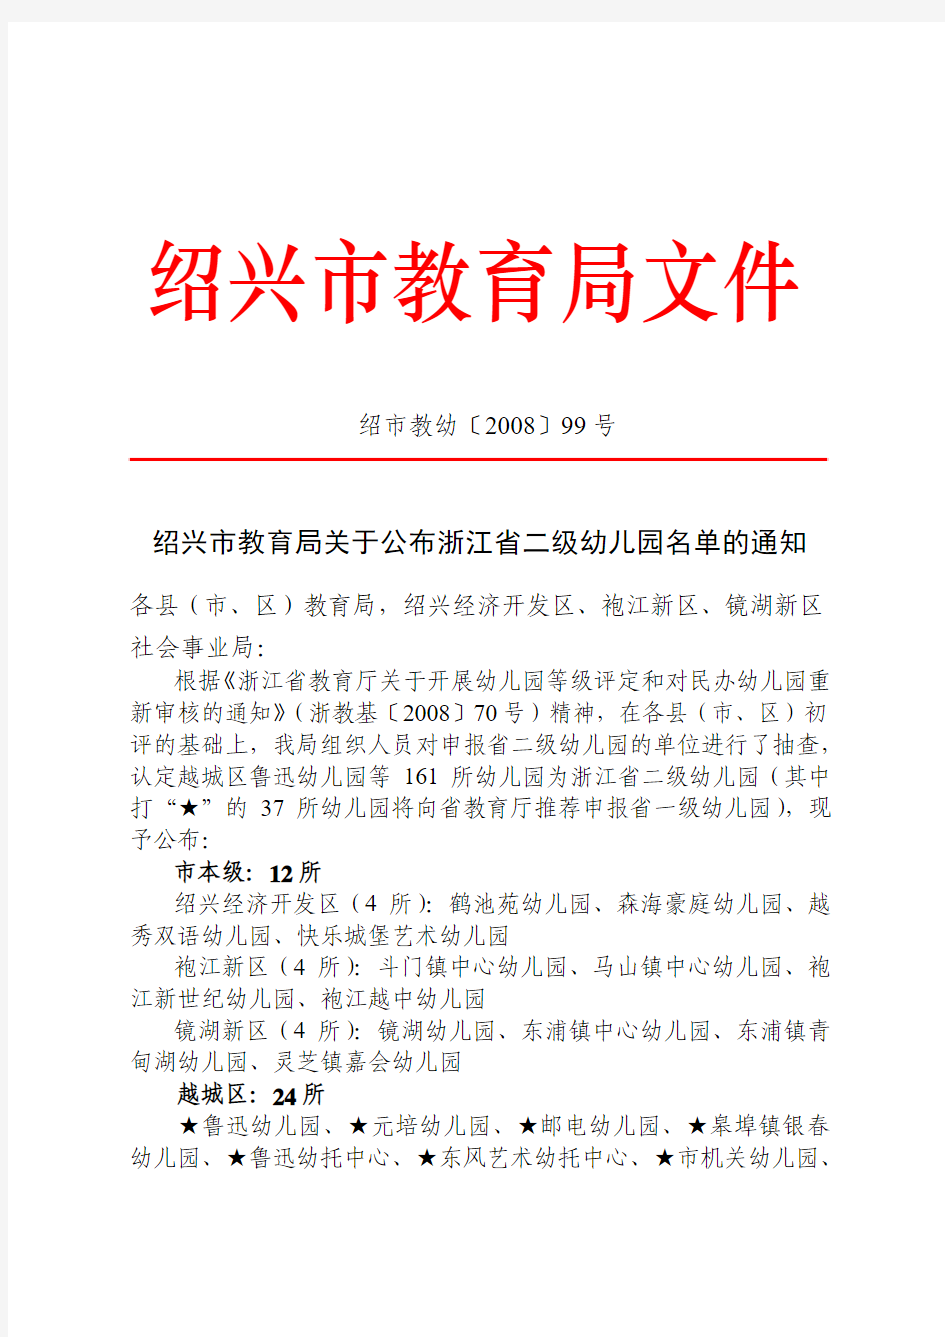 绍兴市教育局关于公布浙江省二级幼儿园名单的通知